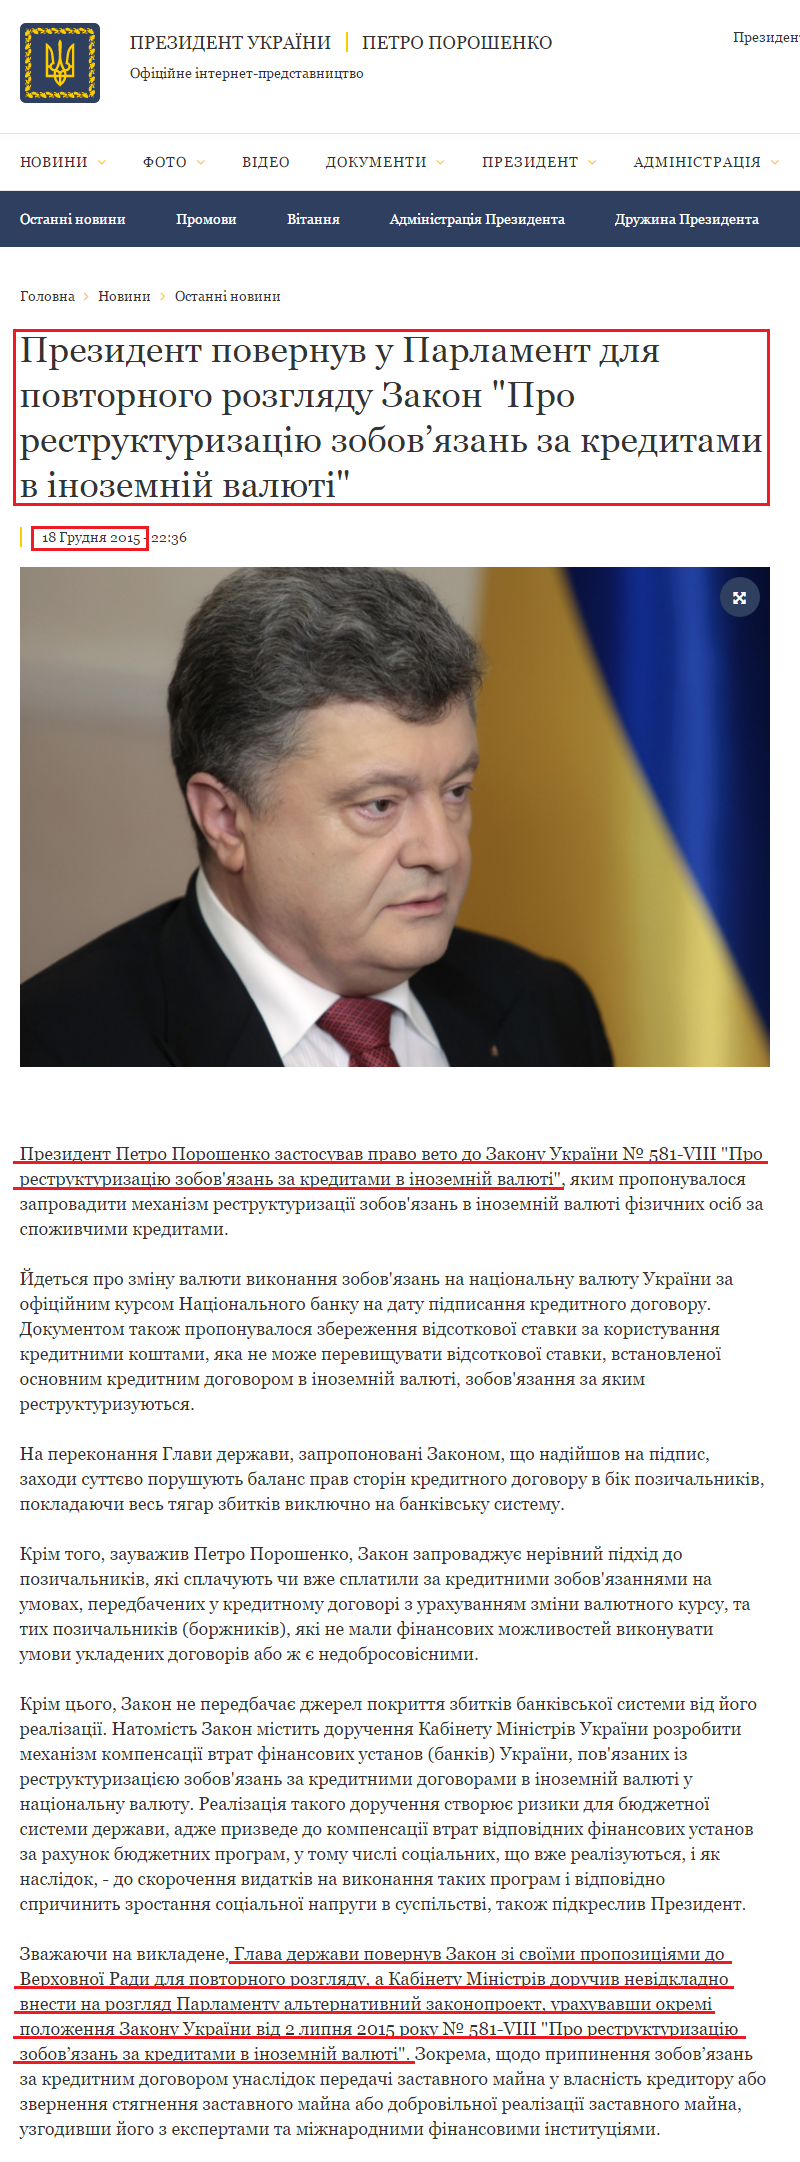 http://www.president.gov.ua/news/prezident-povernuv-u-parlament-dlya-povtornogo-rozglyadu-zak-36522